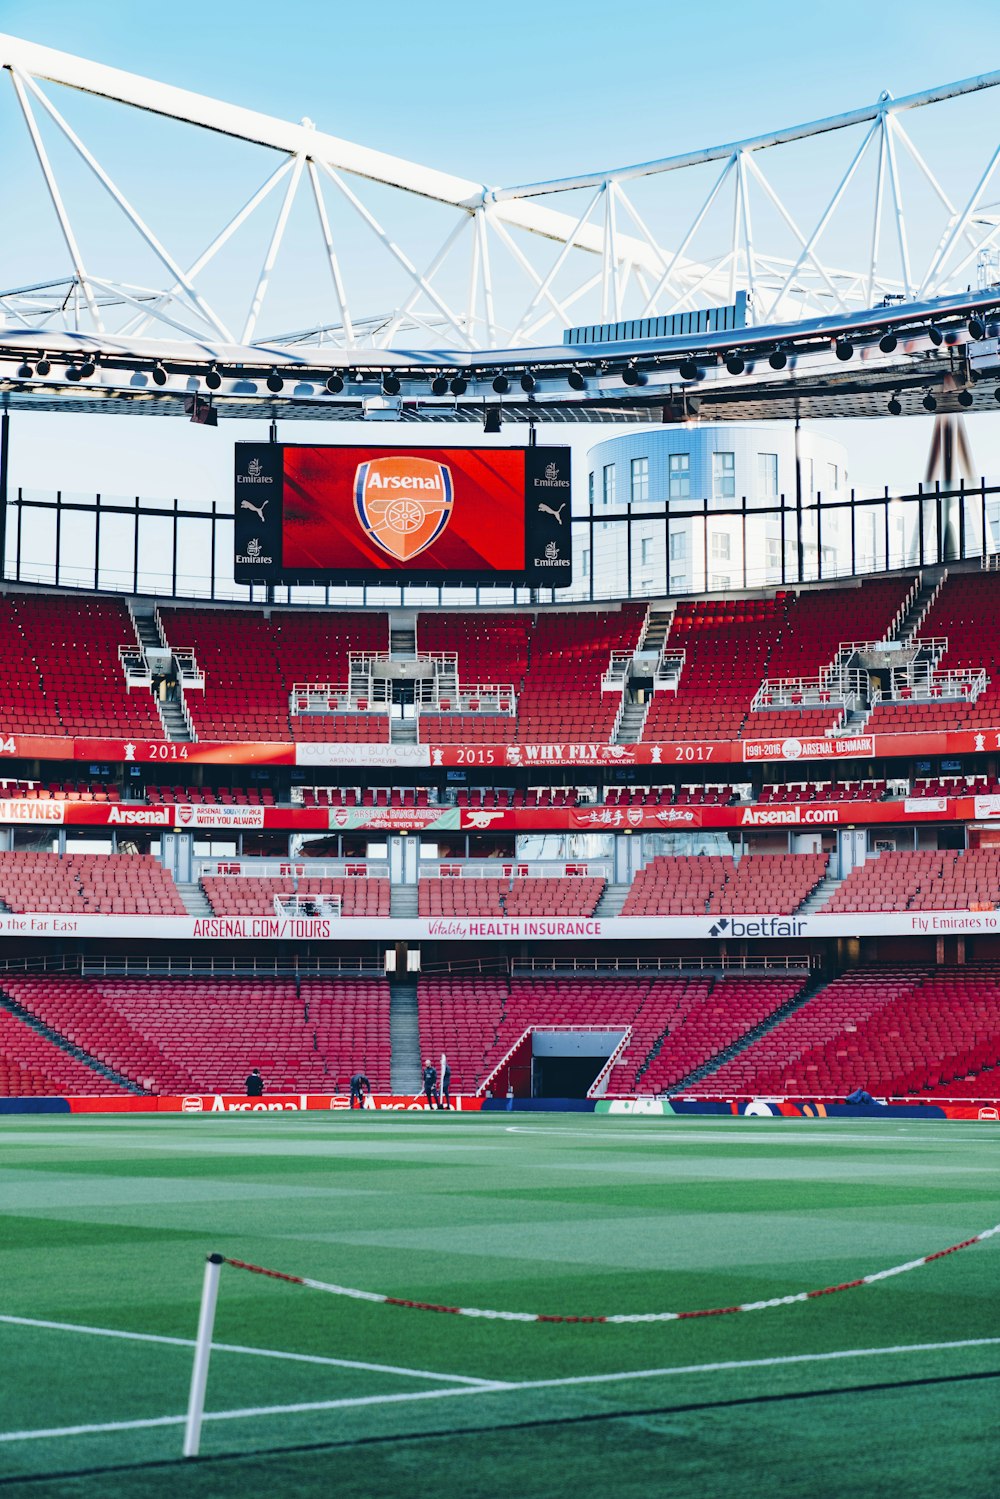 Emirates Stadium là nơi đón chào những cổ động viên trung thành nhất của Arsenal. Nó không chỉ là nơi để xem bóng đá, đây còn là nơi để sống những kỷ niệm tuyệt vời nhất với cùng một đam mê. Hãy tìm hiểu sân Emirates - một trong những kì quan thế giới của bóng đá.